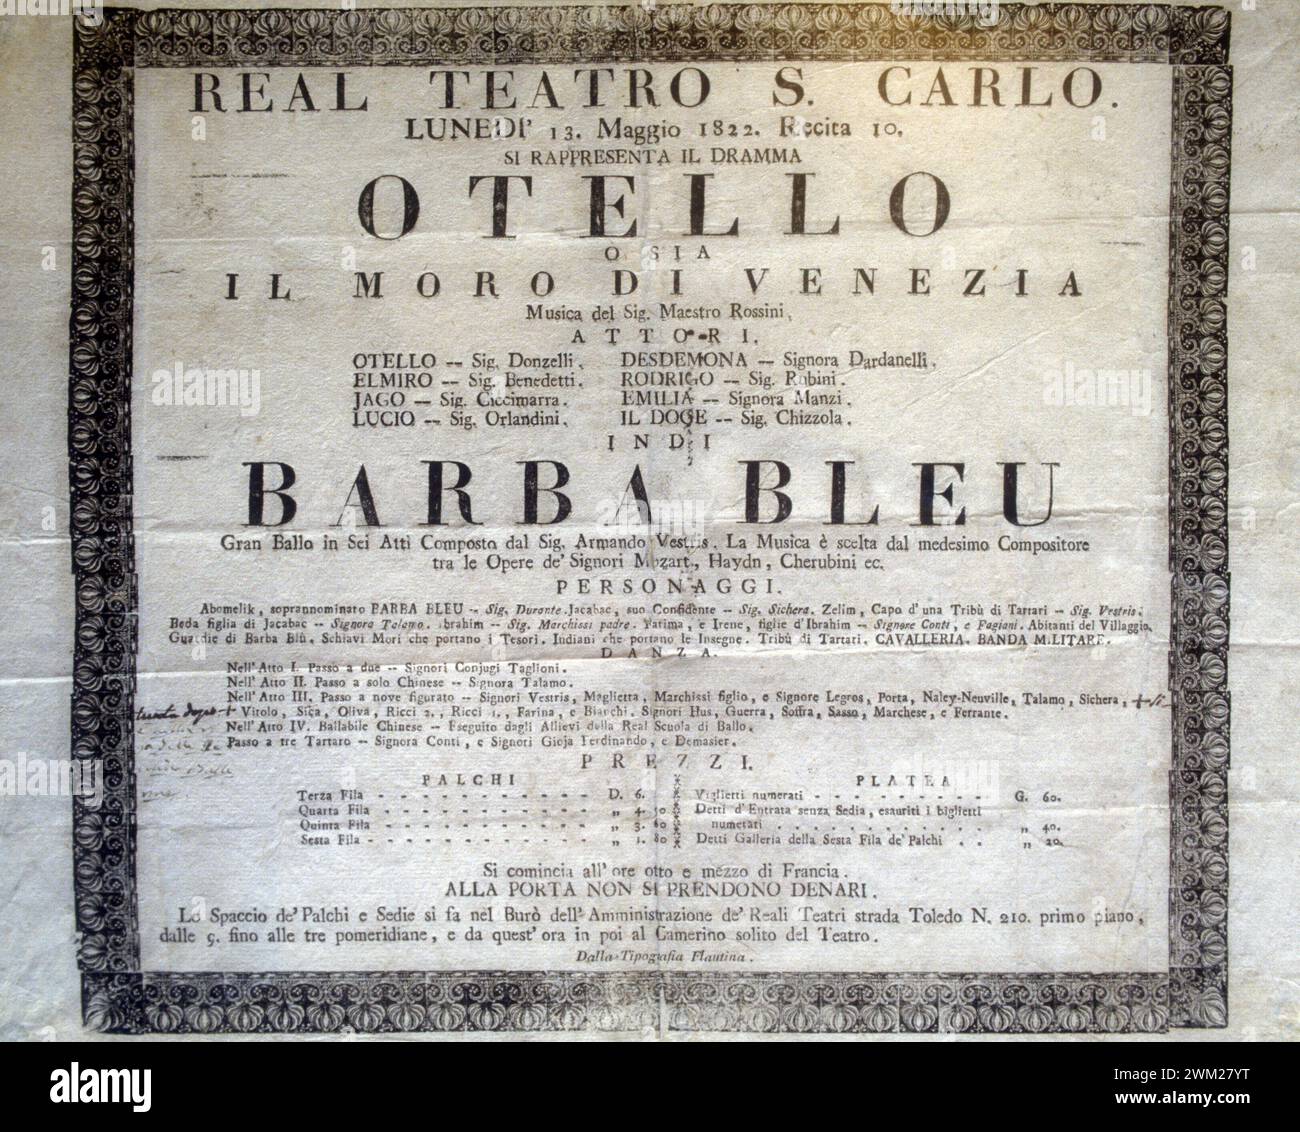 MME4795903 Playbill of the opera “” Otello”” (composed by Gioacchino Rossini in 1816) performed at the San Carlo Theater in Naples/Locandina dell'opera “” Otello”” (scritta nel 1816 by Gioacchino Rossini), rappresentata al Teatro san Carlo di Napoli - Reproduced by Marcello Mencarini; (add.info.: Playbill of the opera “” Otello”” (composed by Gioacchino Rossini in 1816) performed at the San Carlo Theater in Naples/Locandina dell'opera “” Otello”” (scritta nel 1816 by Gioacchino Rossini), rappresentata al Teatro san Carlo di Napoli - Reproduced by Marcello Mencarini); © Marcello Mencarini. Al Stock Photo